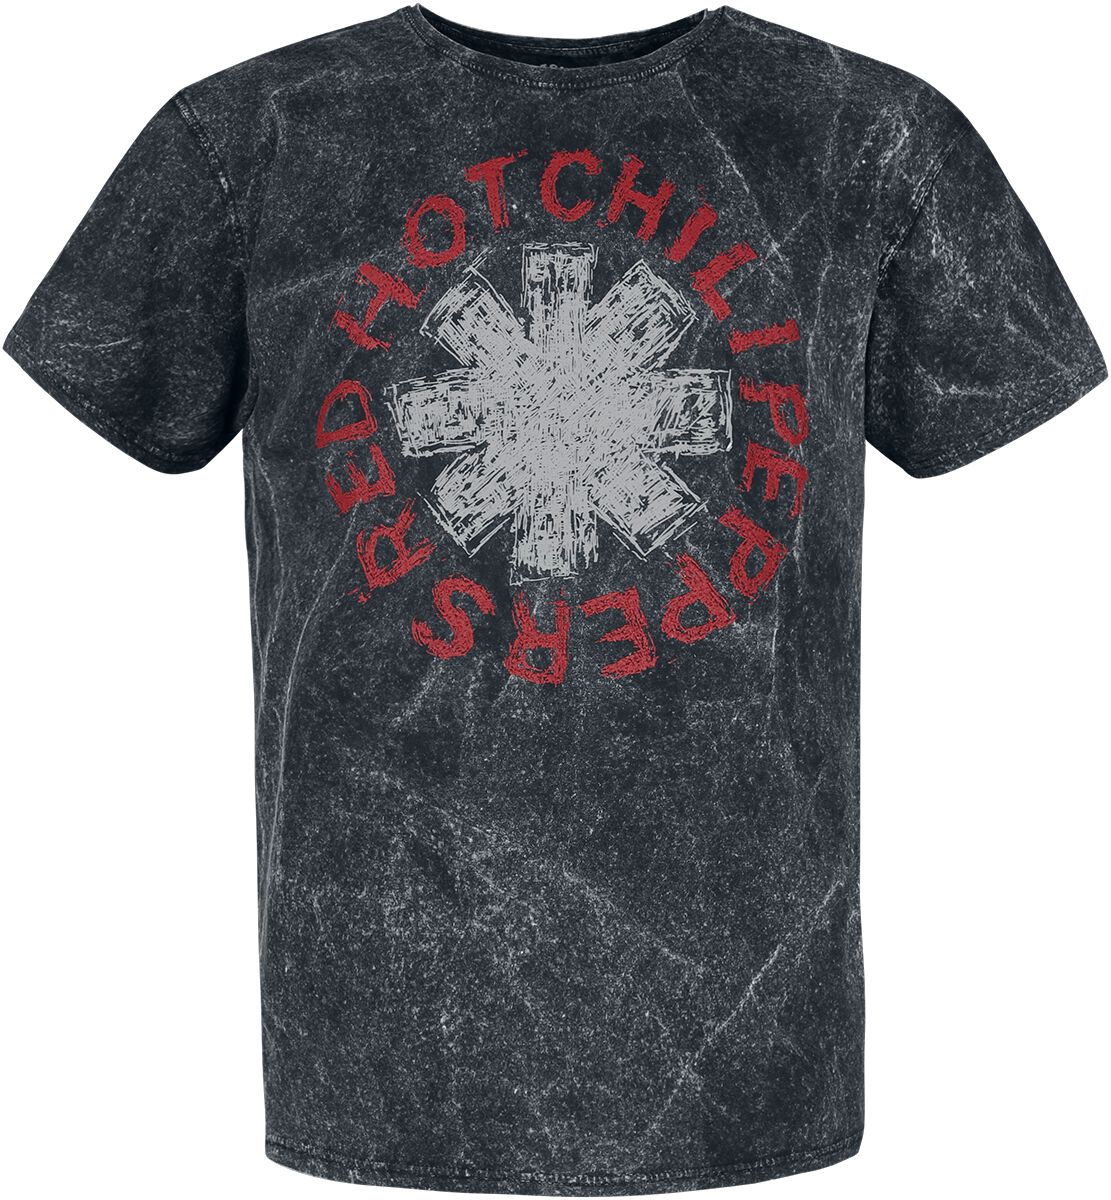 Red Hot Chili Peppers T-Shirt - Scratch Logo - S - für Männer - Größe S - schwarz  - Lizenziertes Merchandise!